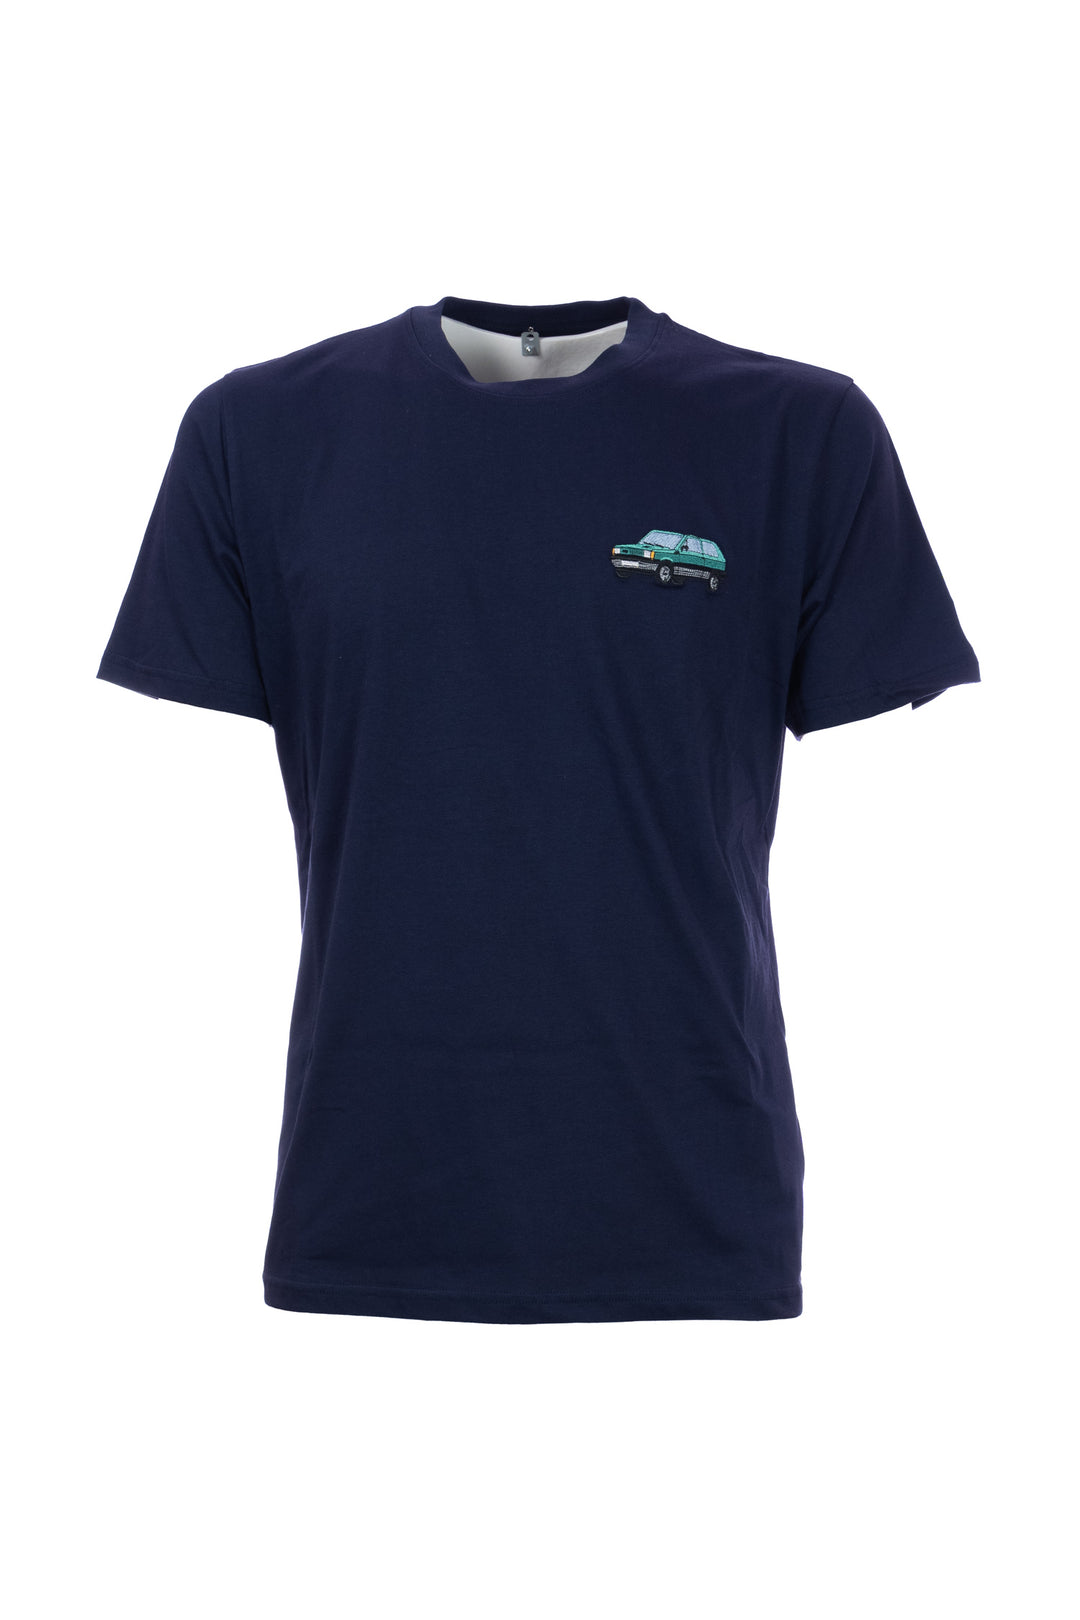 TEMATICO T-shirt blu navy in cotone con ricamo Panda sul petto - Mancinelli 1954